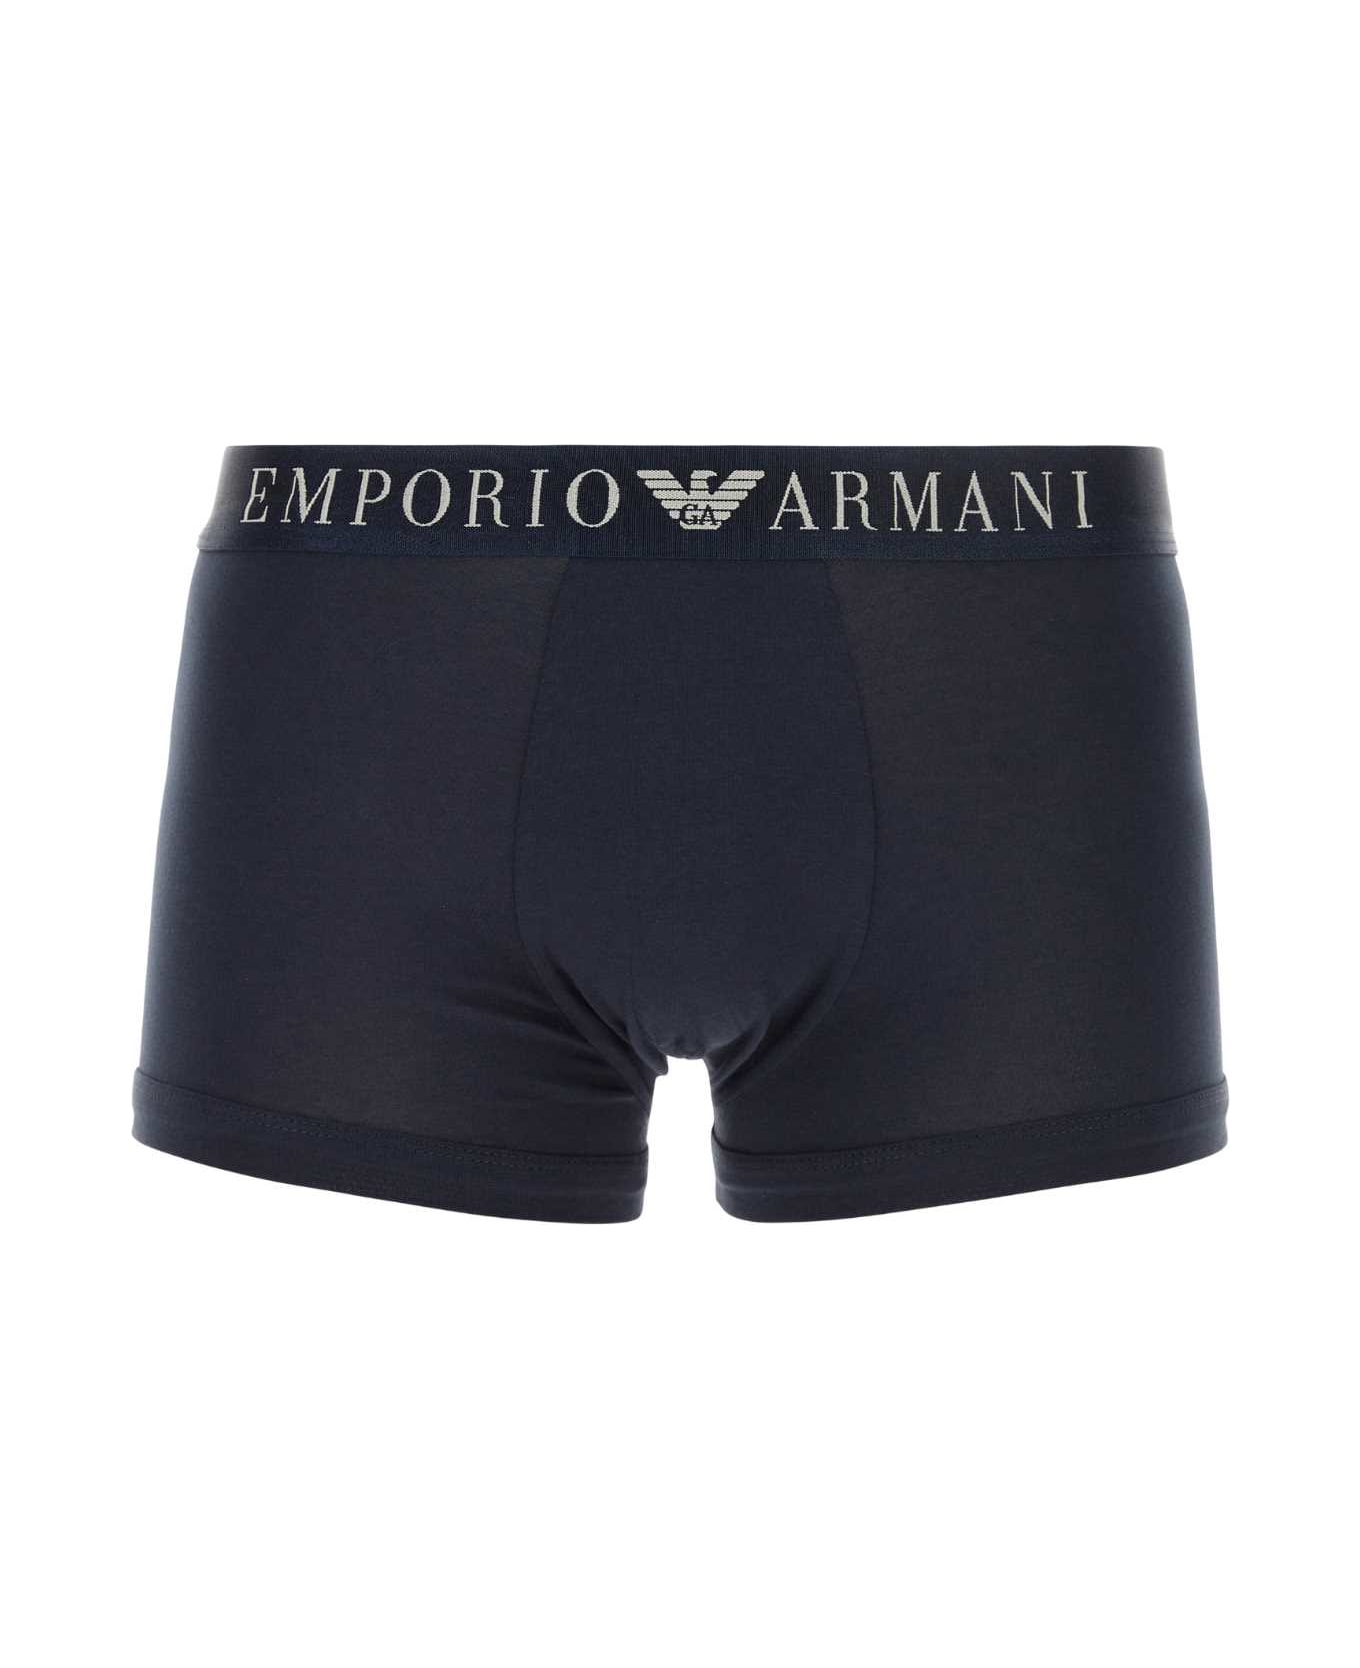 Emporio Armani Blue Stretch Cotton Boxer - 00135